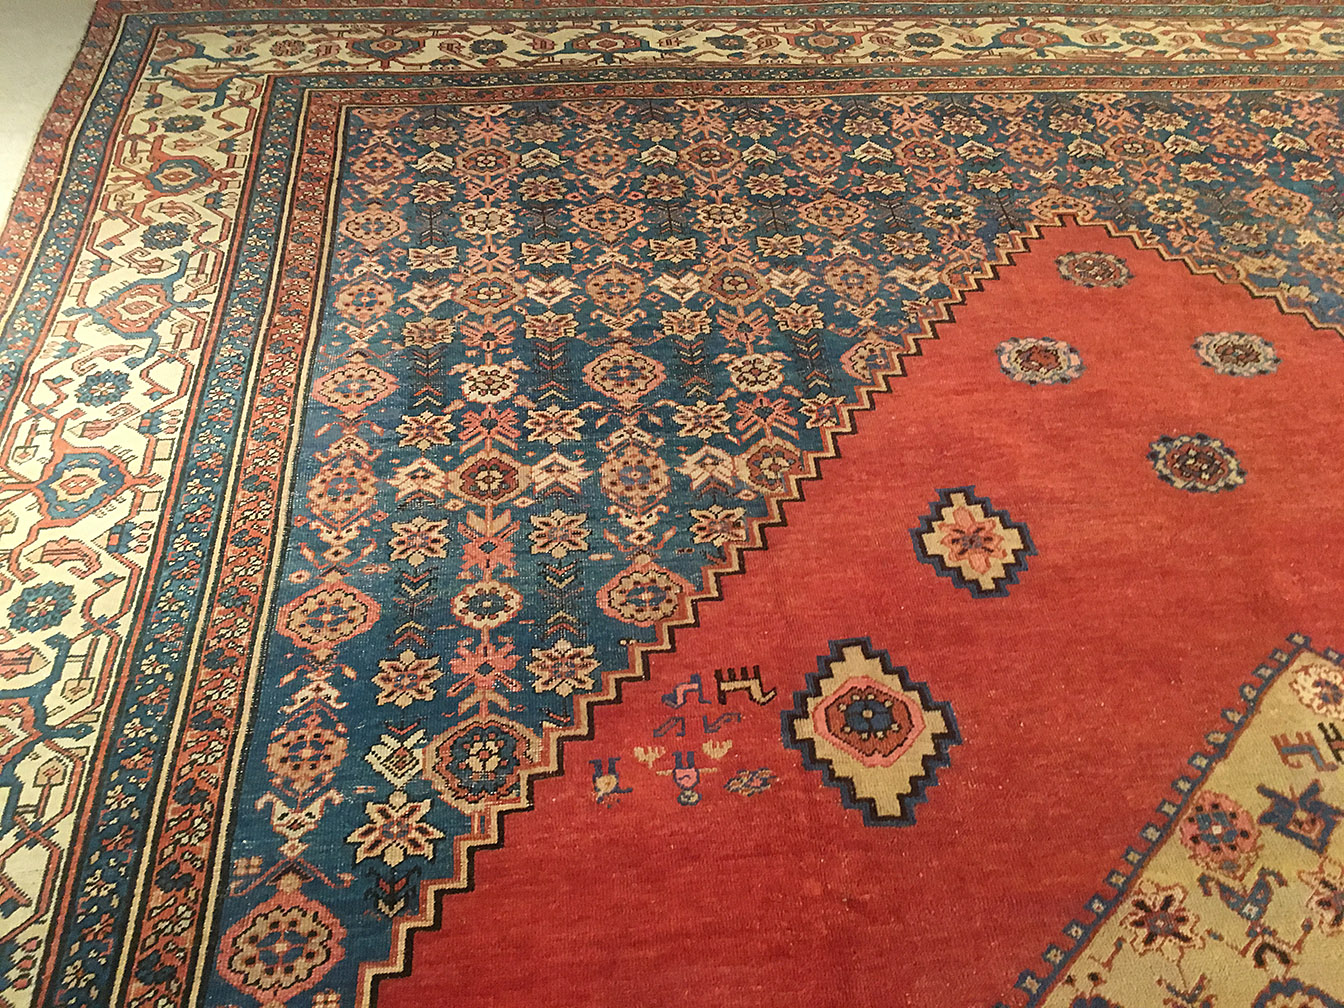 Antique bakshaish Carpet - # 54307